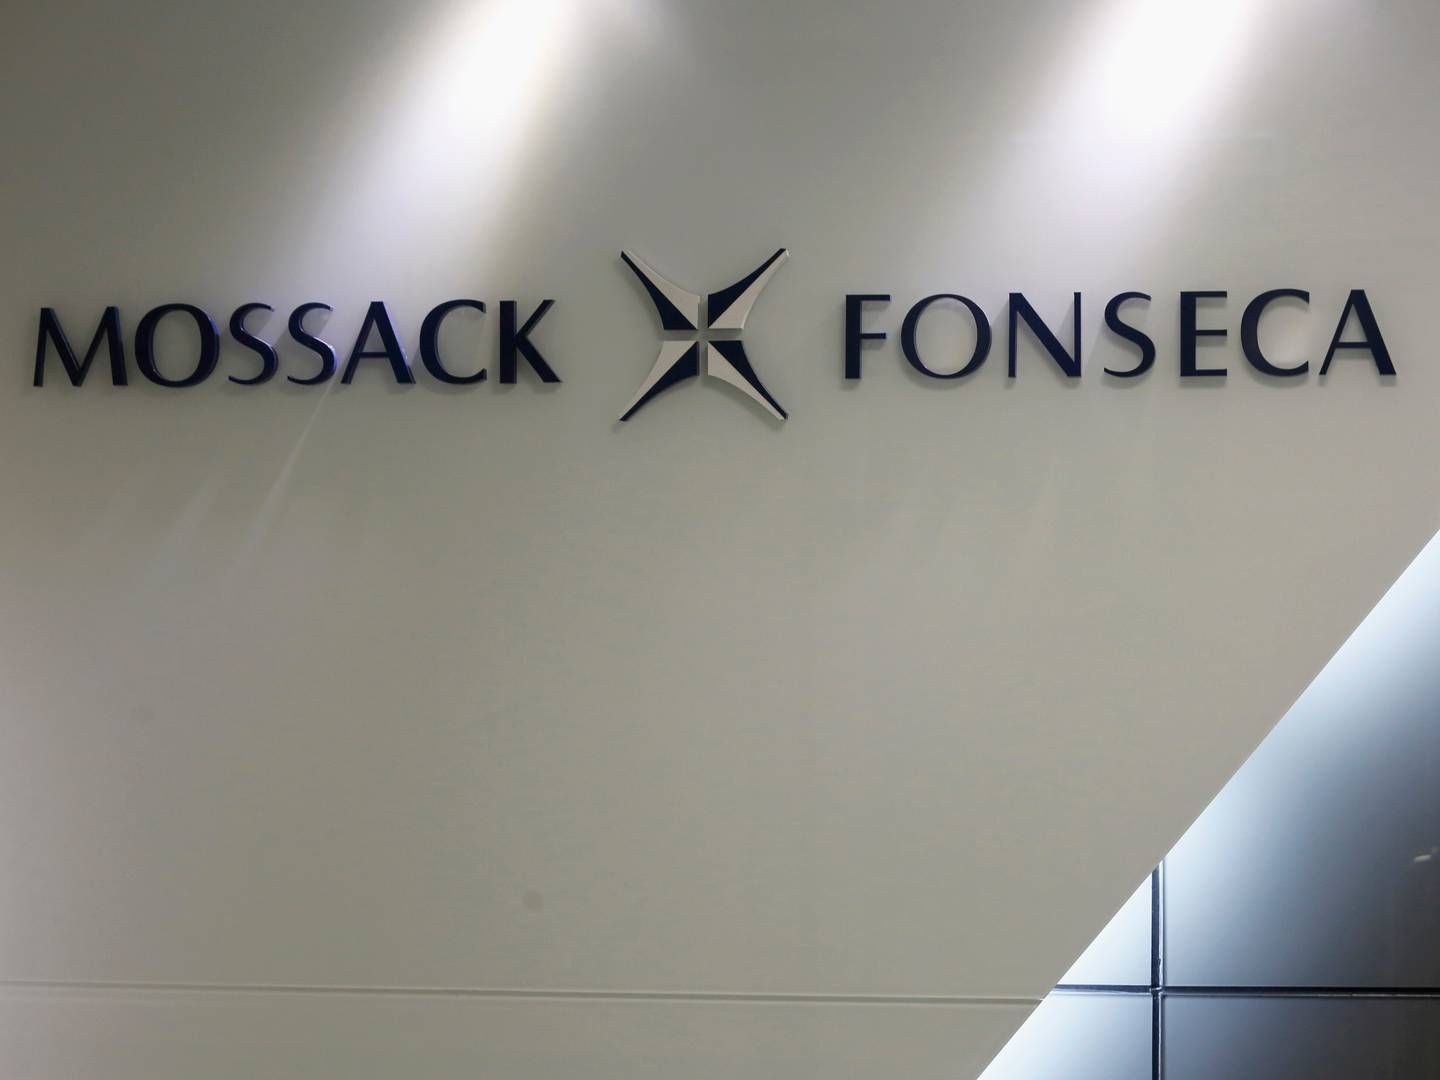 Den såkaldte Panama Papers-lækage afslørede, hvordan advokatfirmaet Mossack Fonseca har hjulpet personer med at holde formuer skjult for skattemyndighederne. Skat har brugt oplysningerne til at rejse et krav på 433 mio. kr. mod 115 danskere.